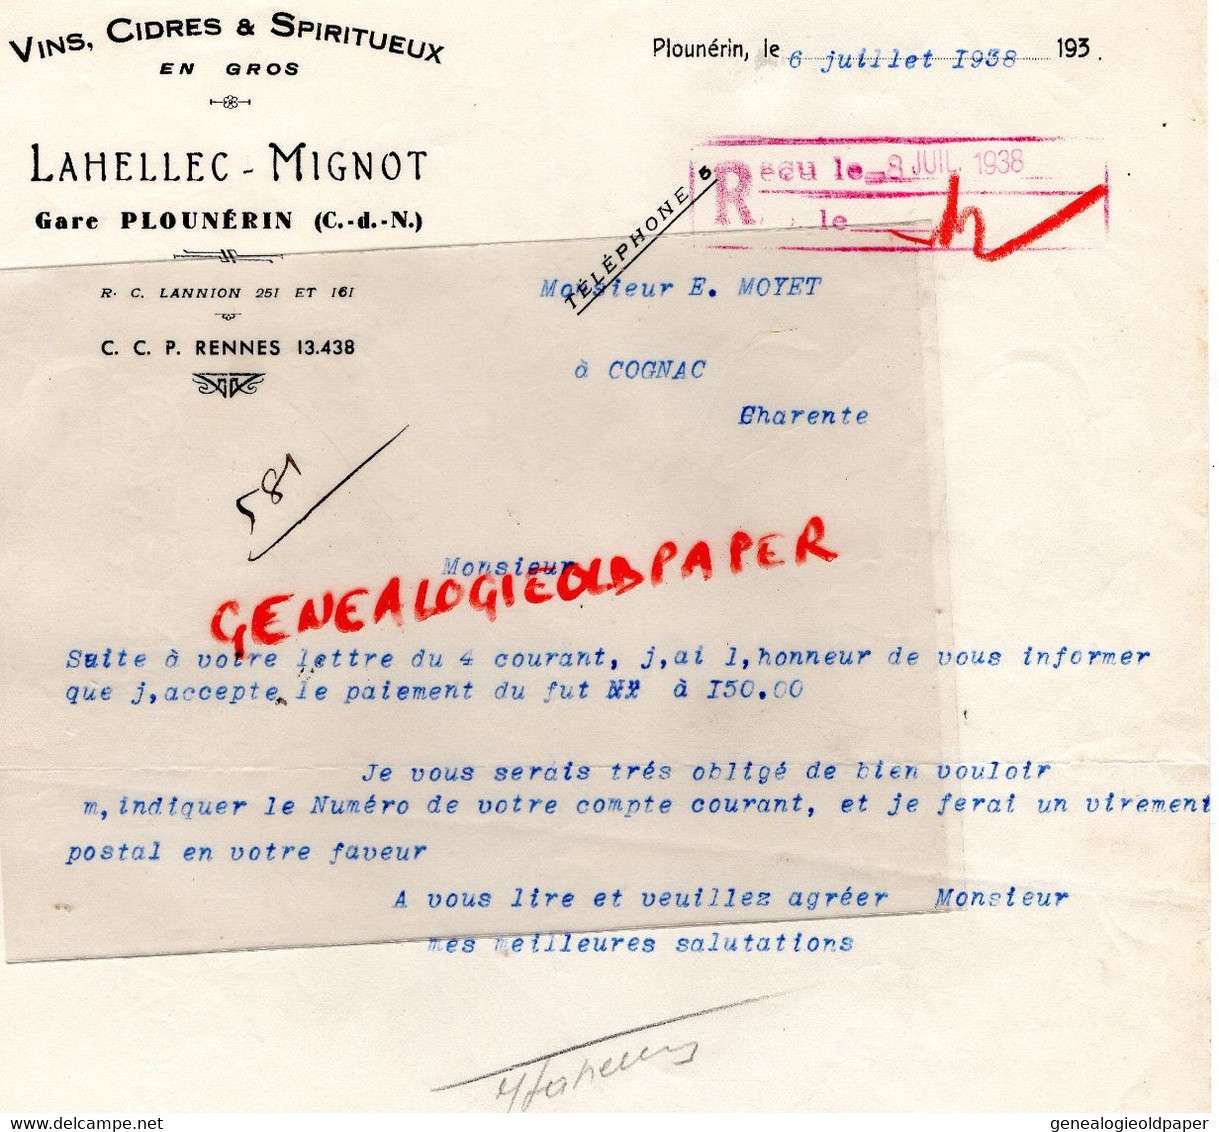 22- PLOUNERIN-GARE- RARE LETTRE LAHELLEC MIGNOT- VINS CIDRES SPIRITUEUX- A M. E. MOYET COGNAC  1938 - Lebensmittel